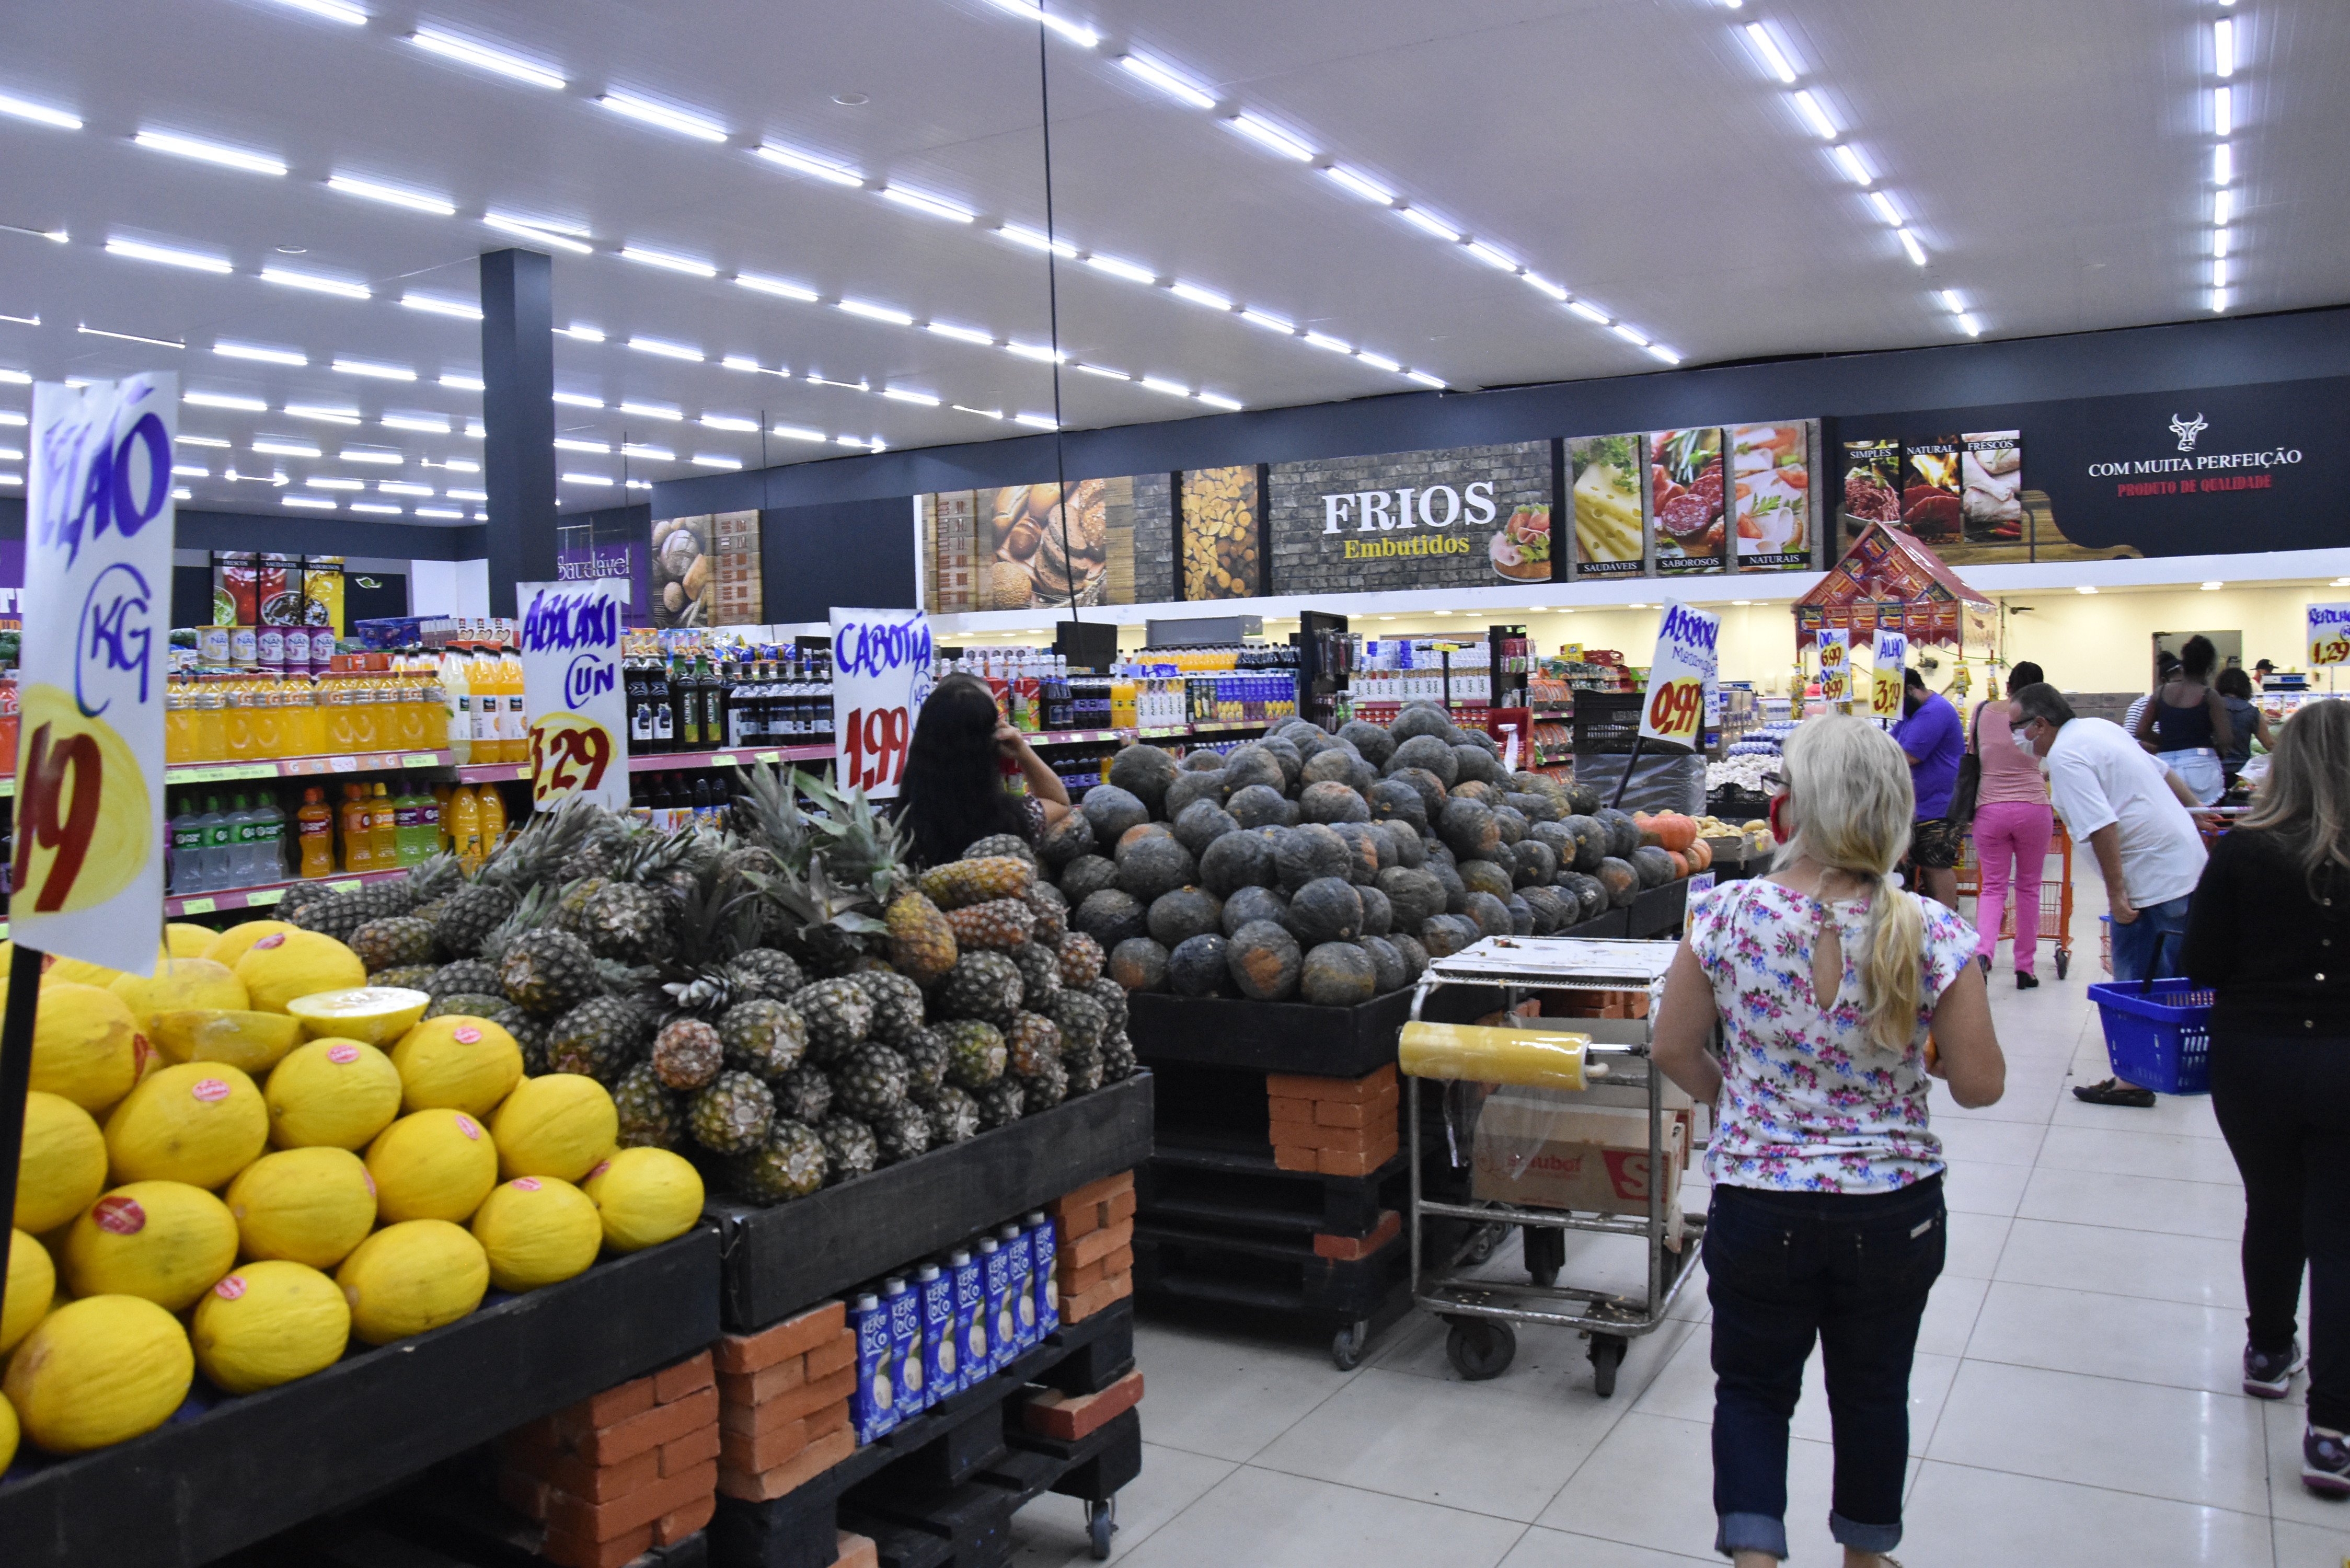 89% os supermercadistas acreditam que neste momento deve manter o quadro de funcionários - e com o fim da ajuda financeira do governo a situação pode ficar critica